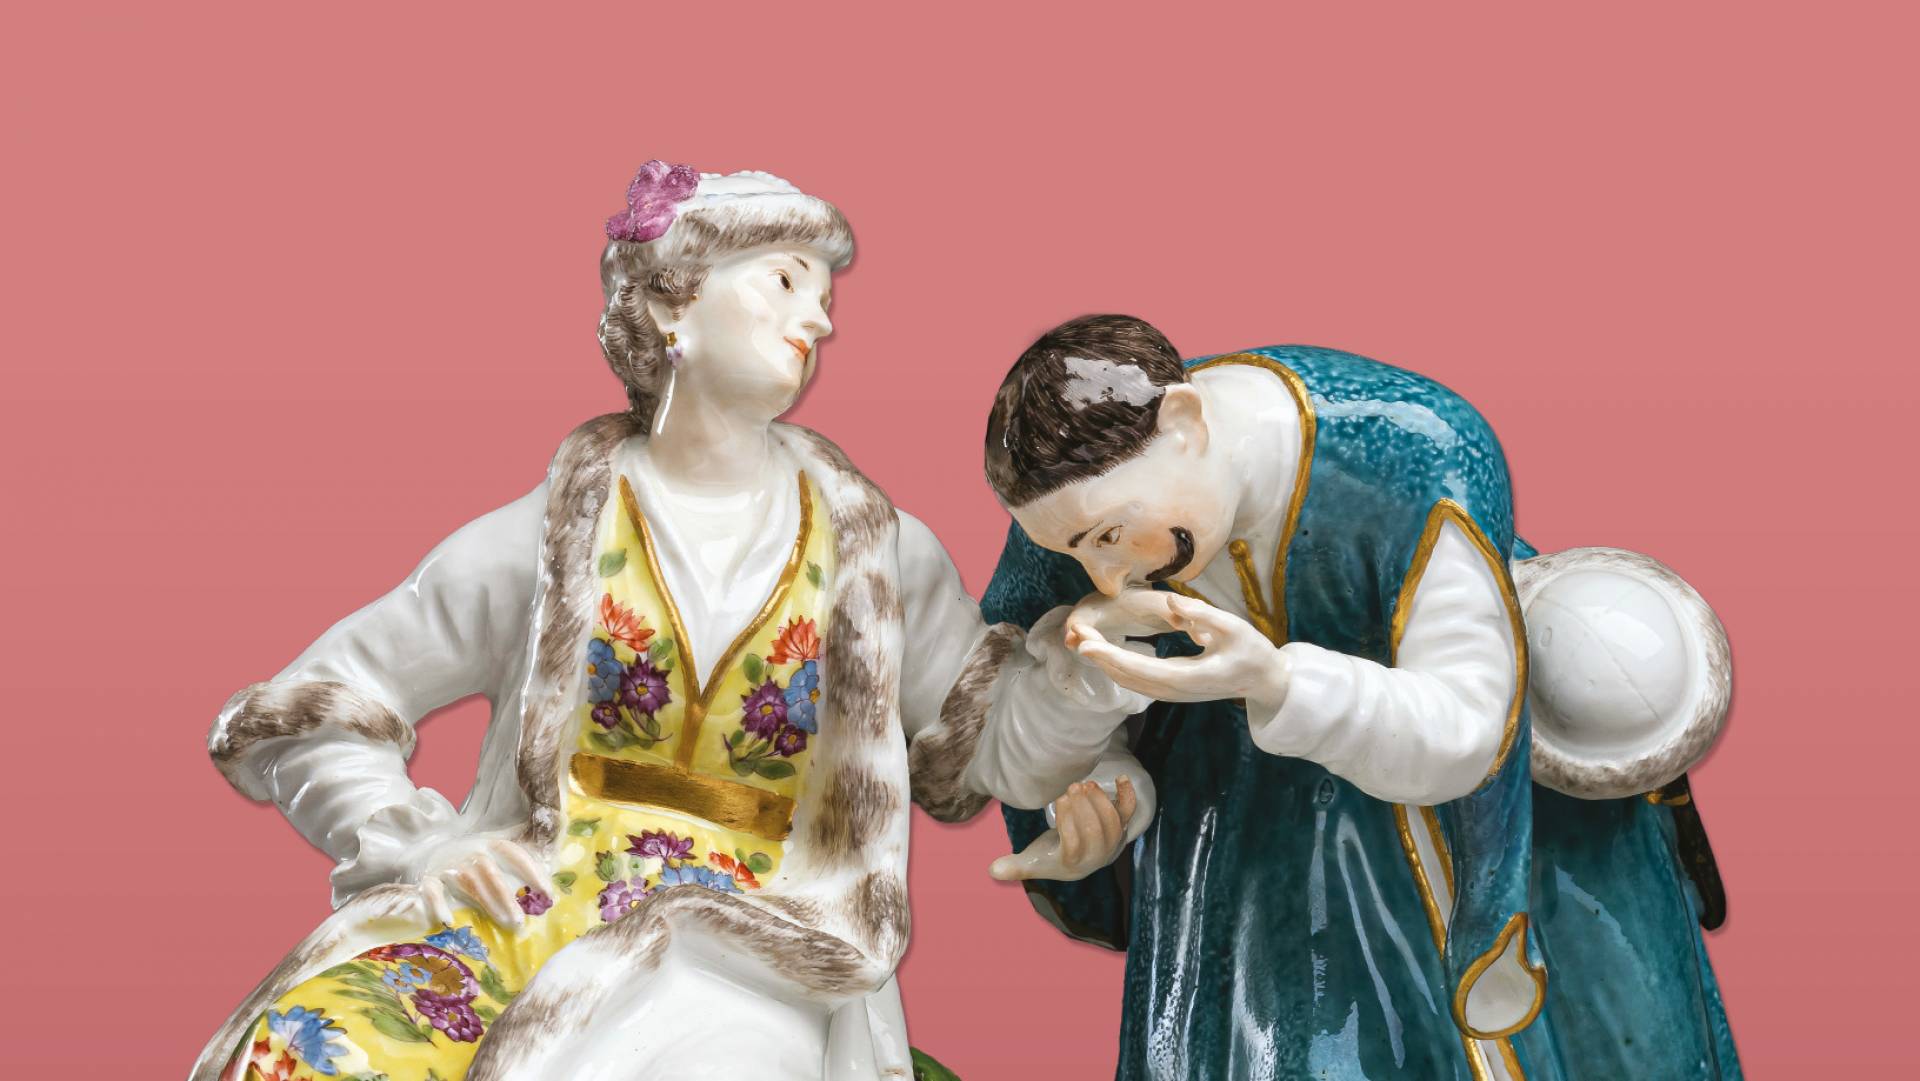 Nowa wystawa na Wawelu: Wspaniałość rokoka. Miśnieńskie figurki porcelanowe Johanna Joachima Kaendlera